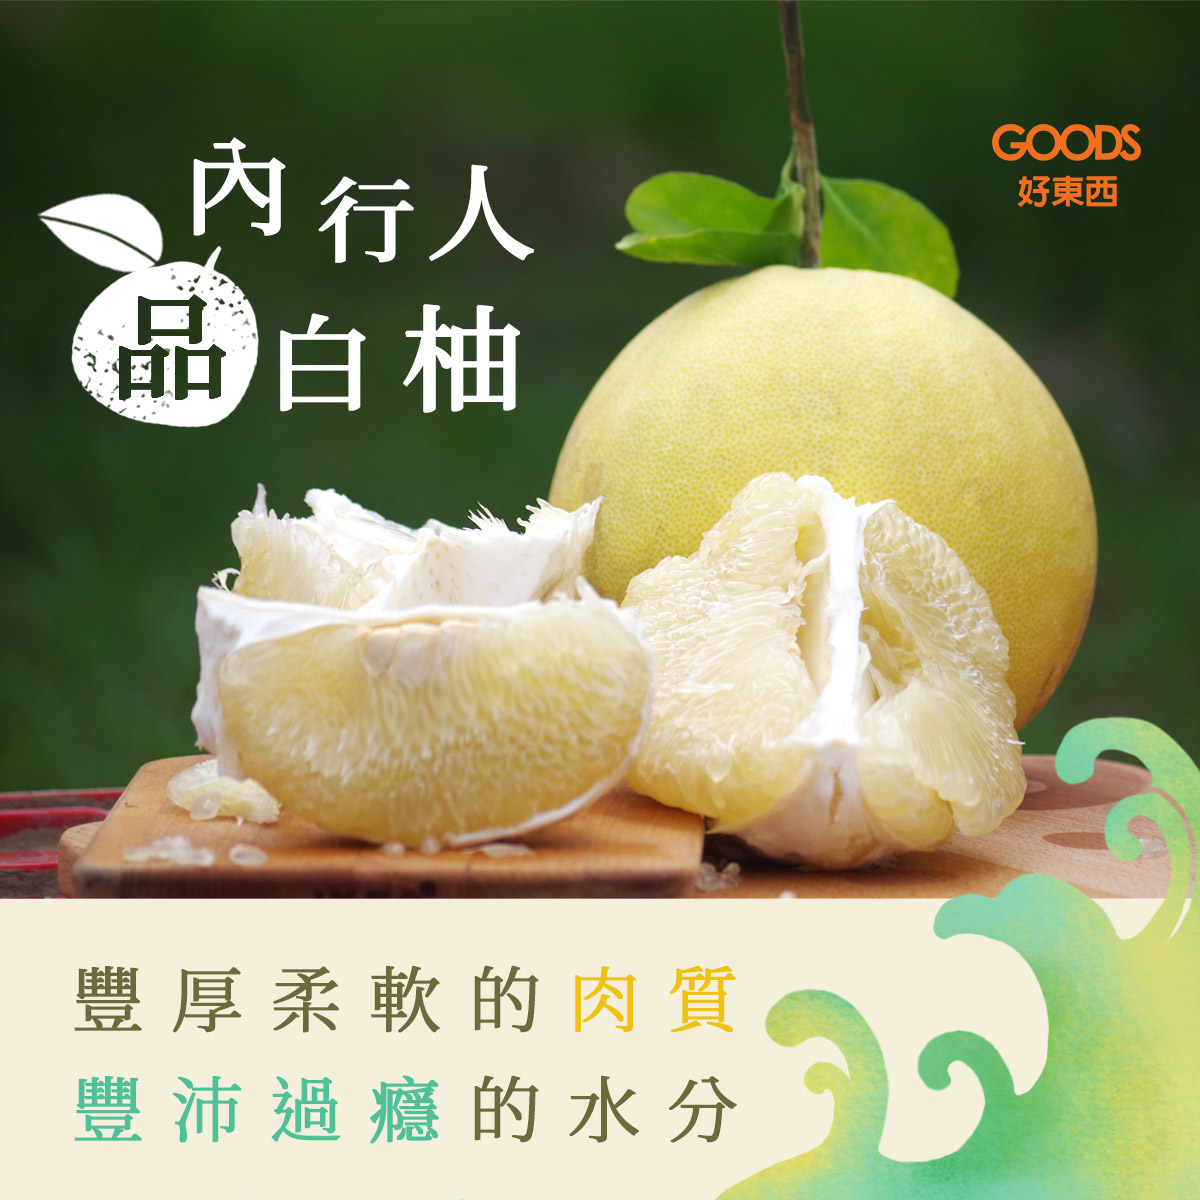 柚見好秋】台南麻豆大白柚- 豐厚柔軟的肉質、豐沛過癮的水分- GOODS好東西